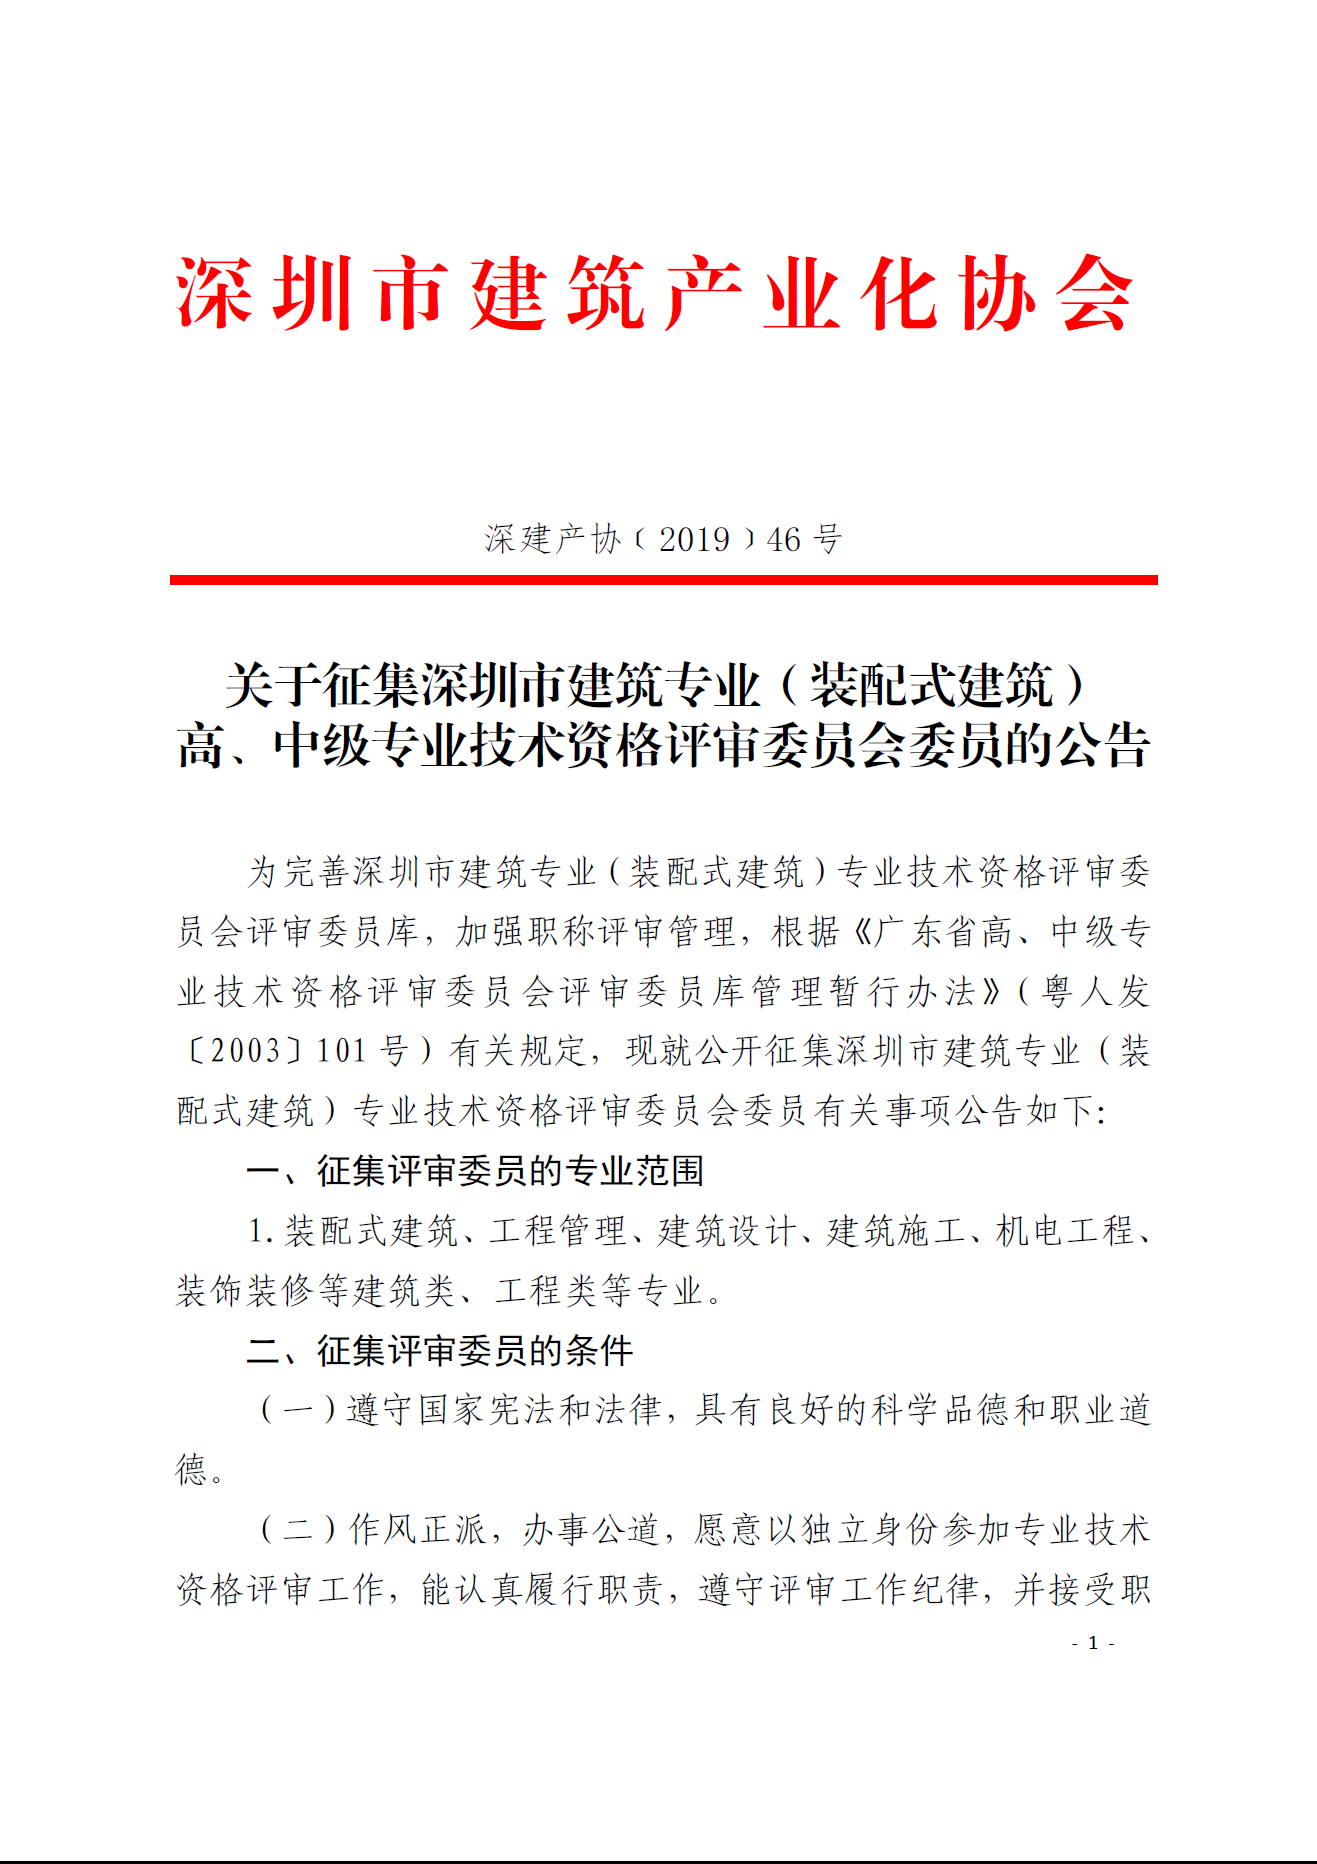 关于征集深圳市建筑专业（装配式建筑） 高、中级专业技术资格评审委员会委员的公告